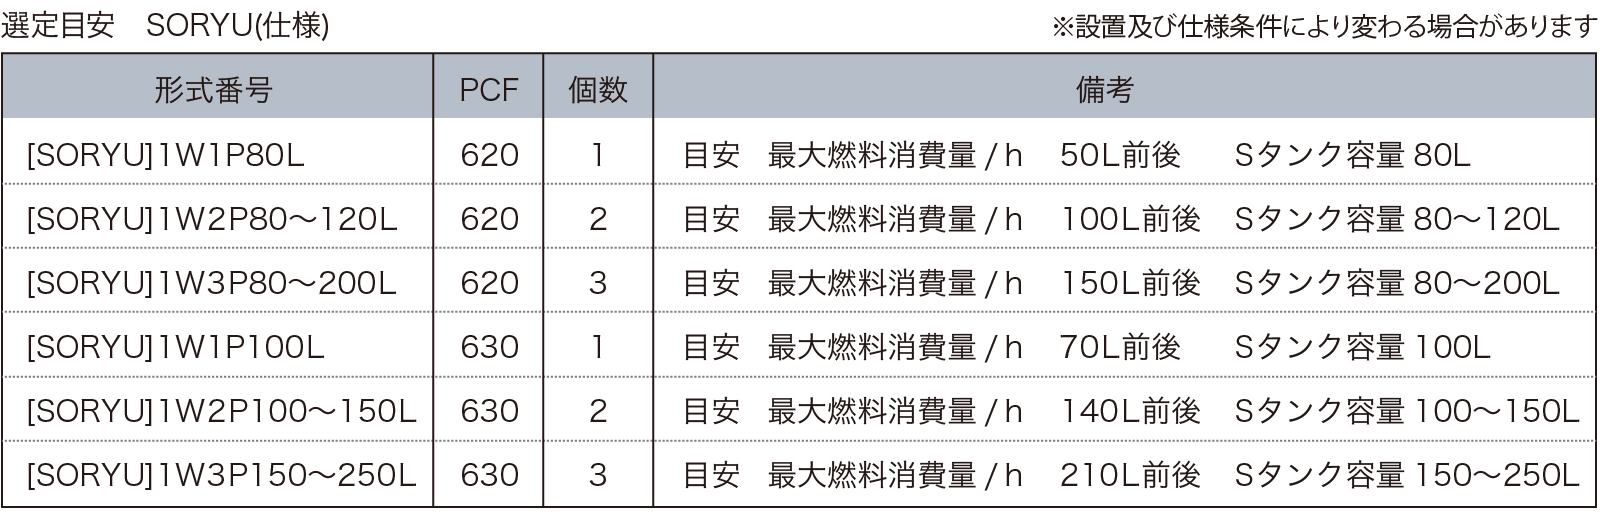 SORYUの商品構成と適合の表